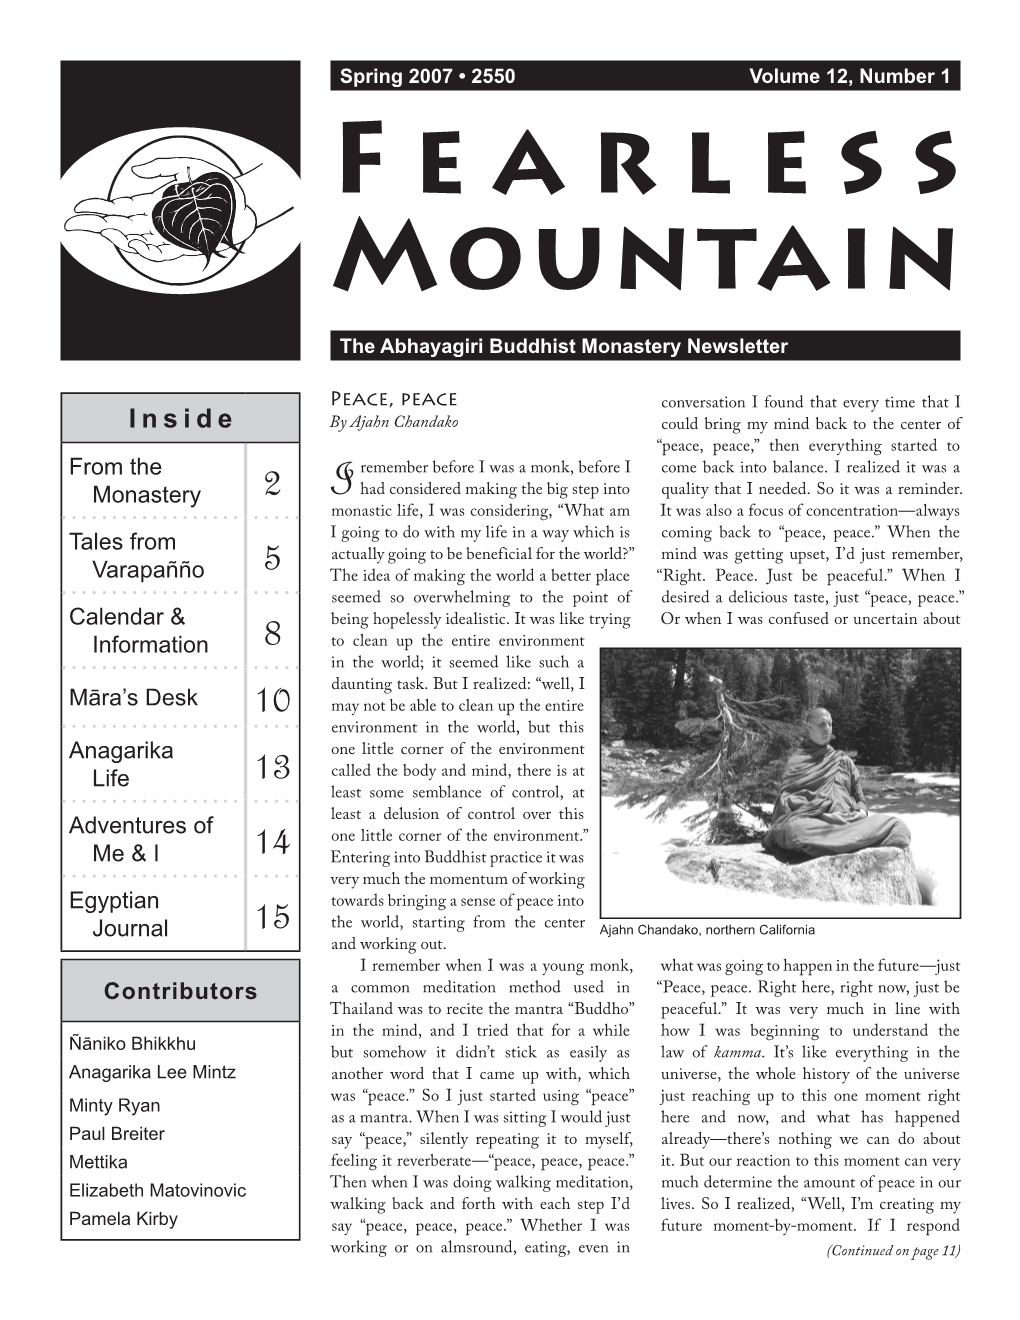 Newsletter Spring, 2007